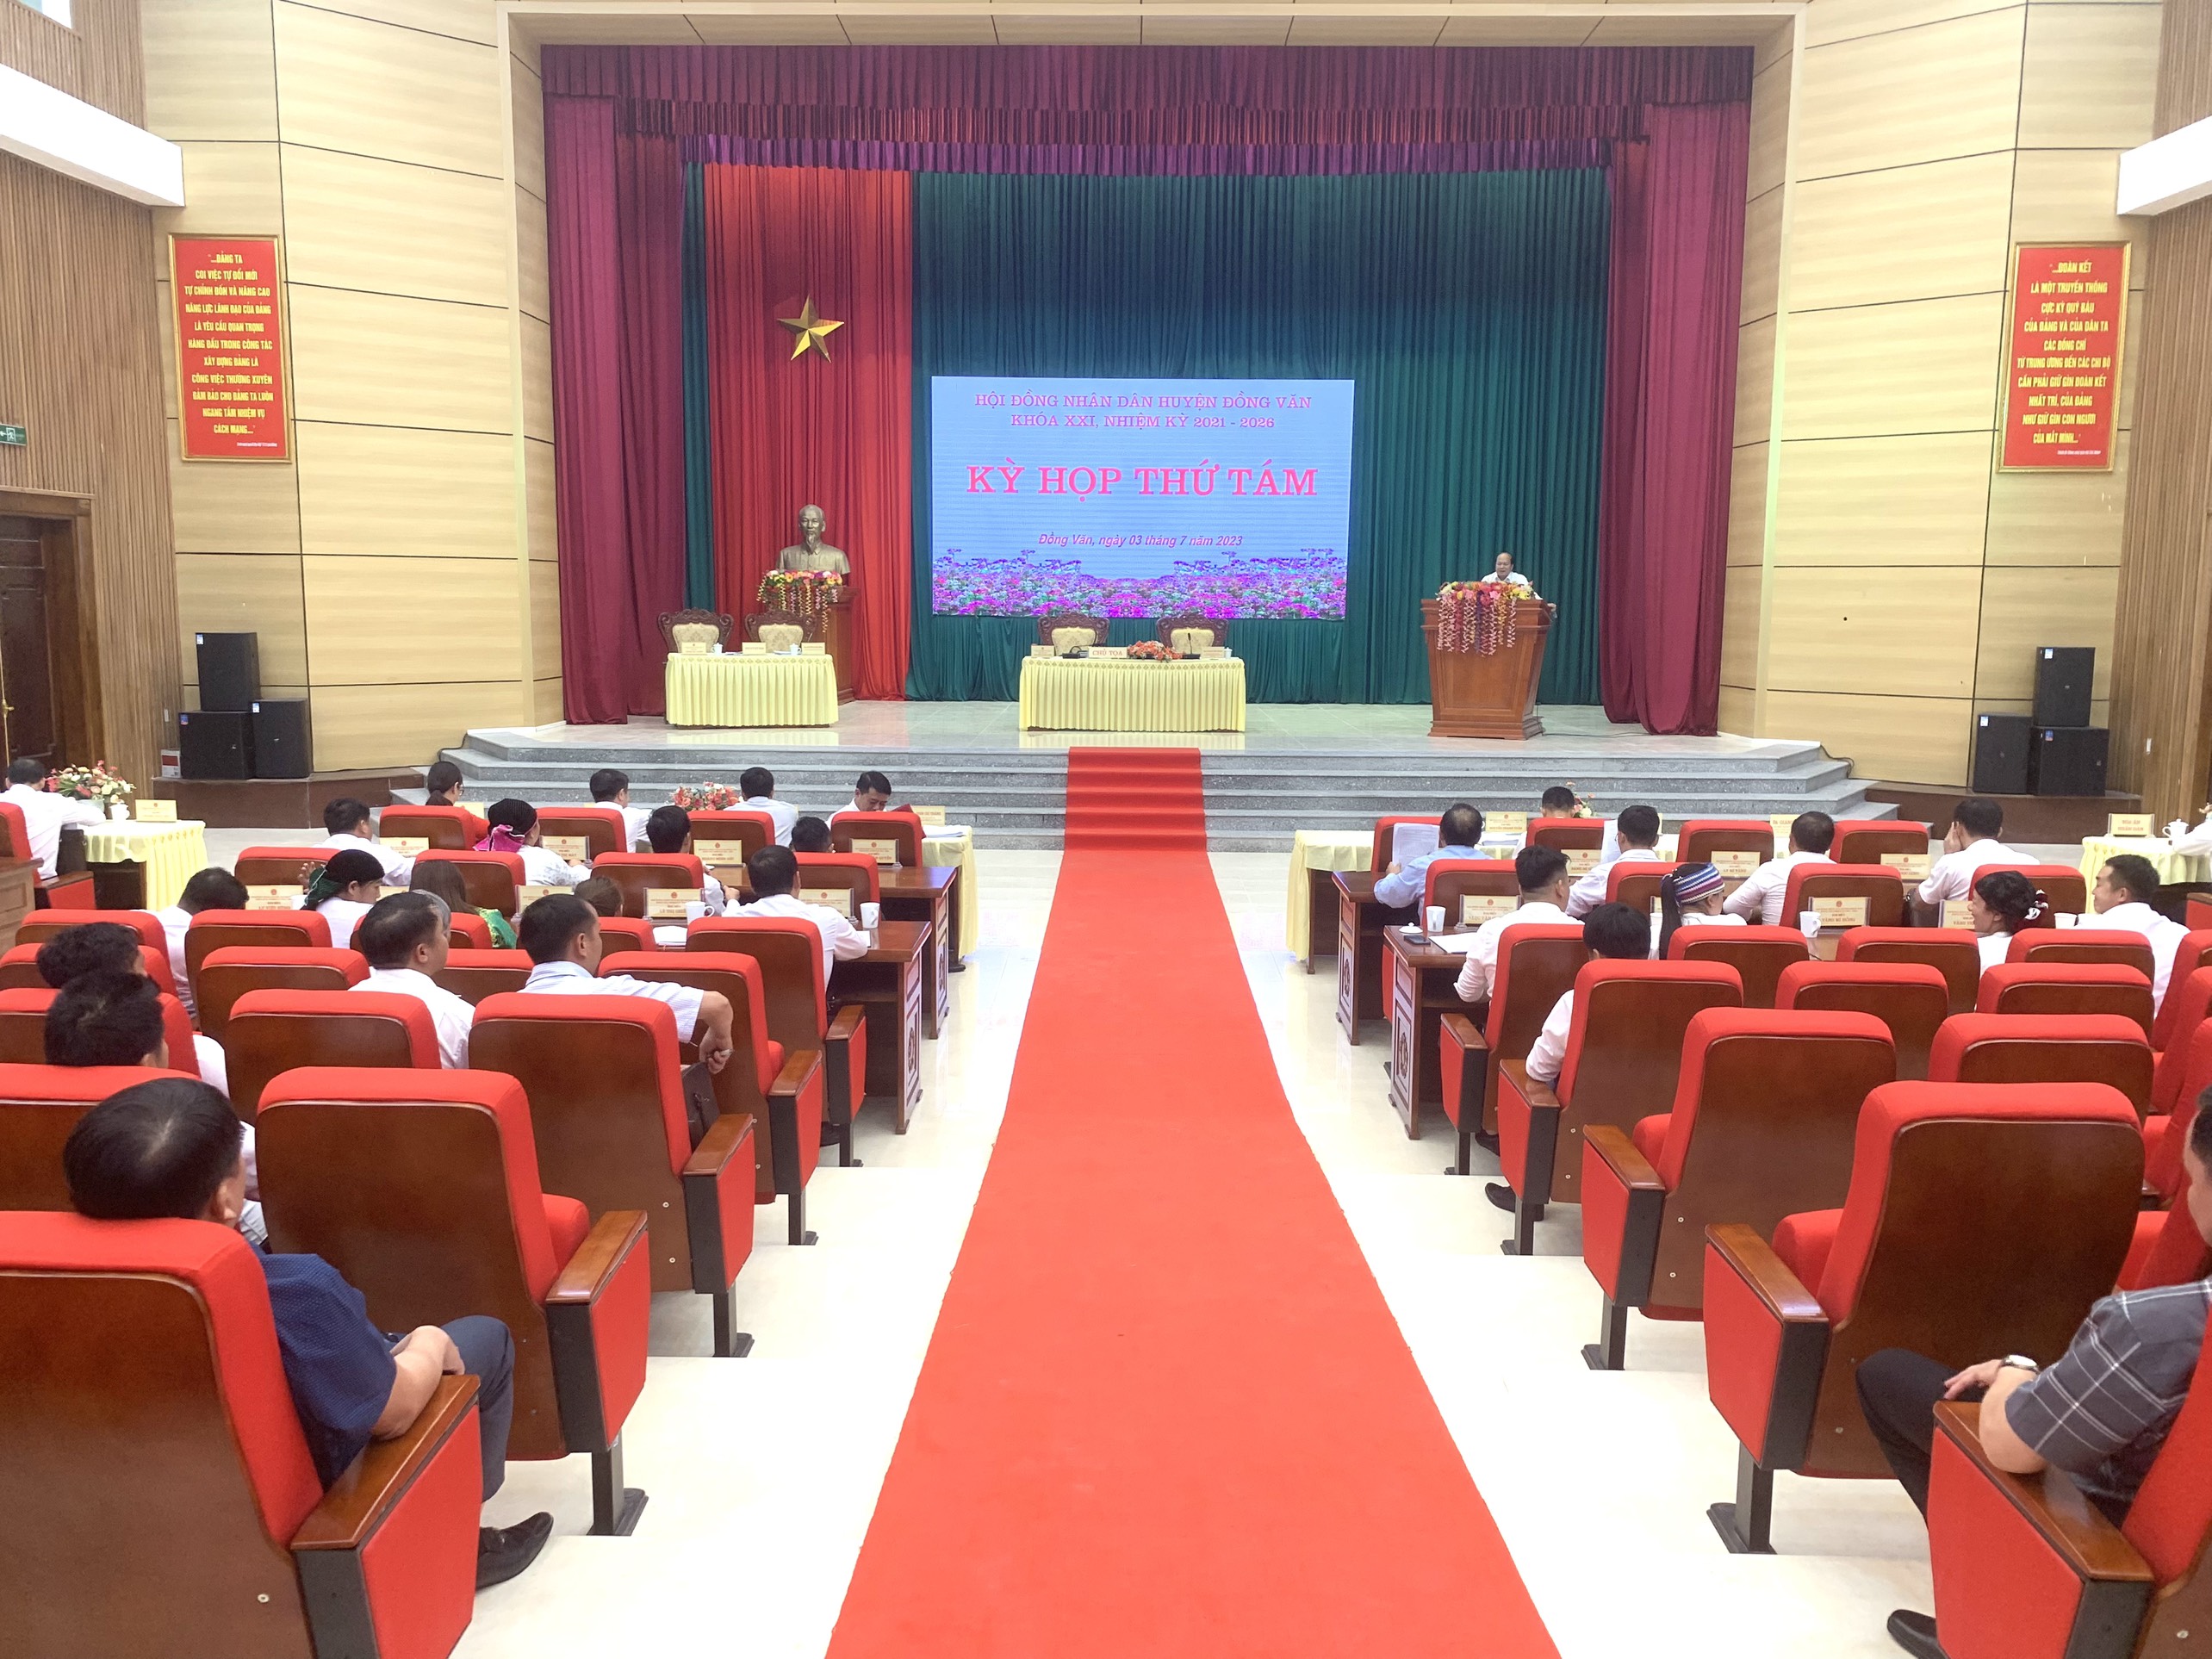 Kỳ họp thứ tám Hội đồng nhân dân huyện Đồng Văn khóa XXI, nhiệm kỳ 2020 – 2025